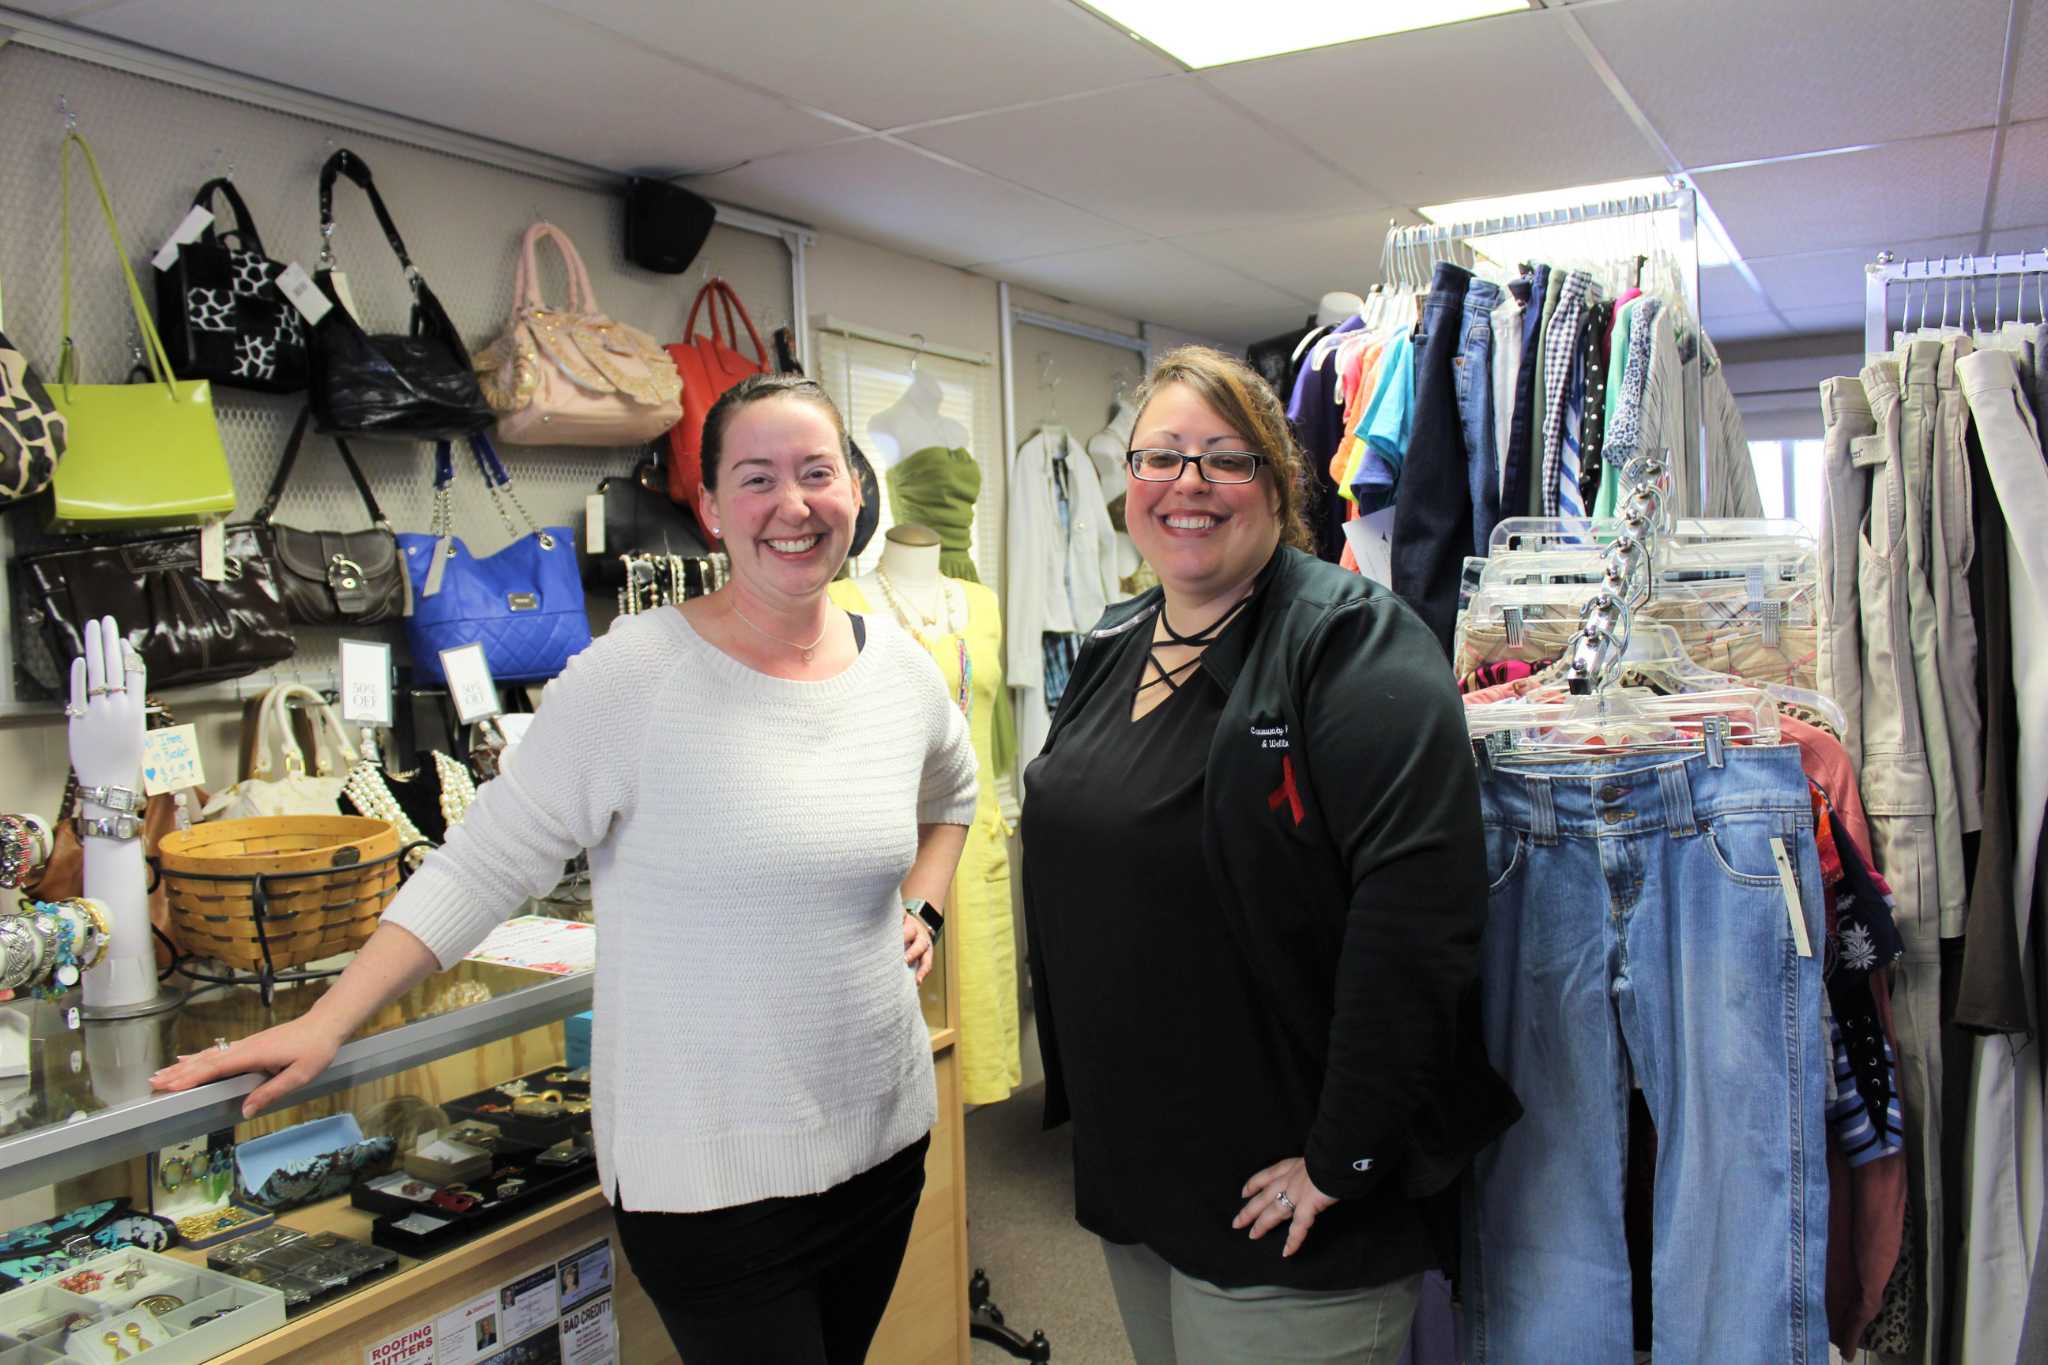 Torrington consignment shop joins health center's clothing voucher program